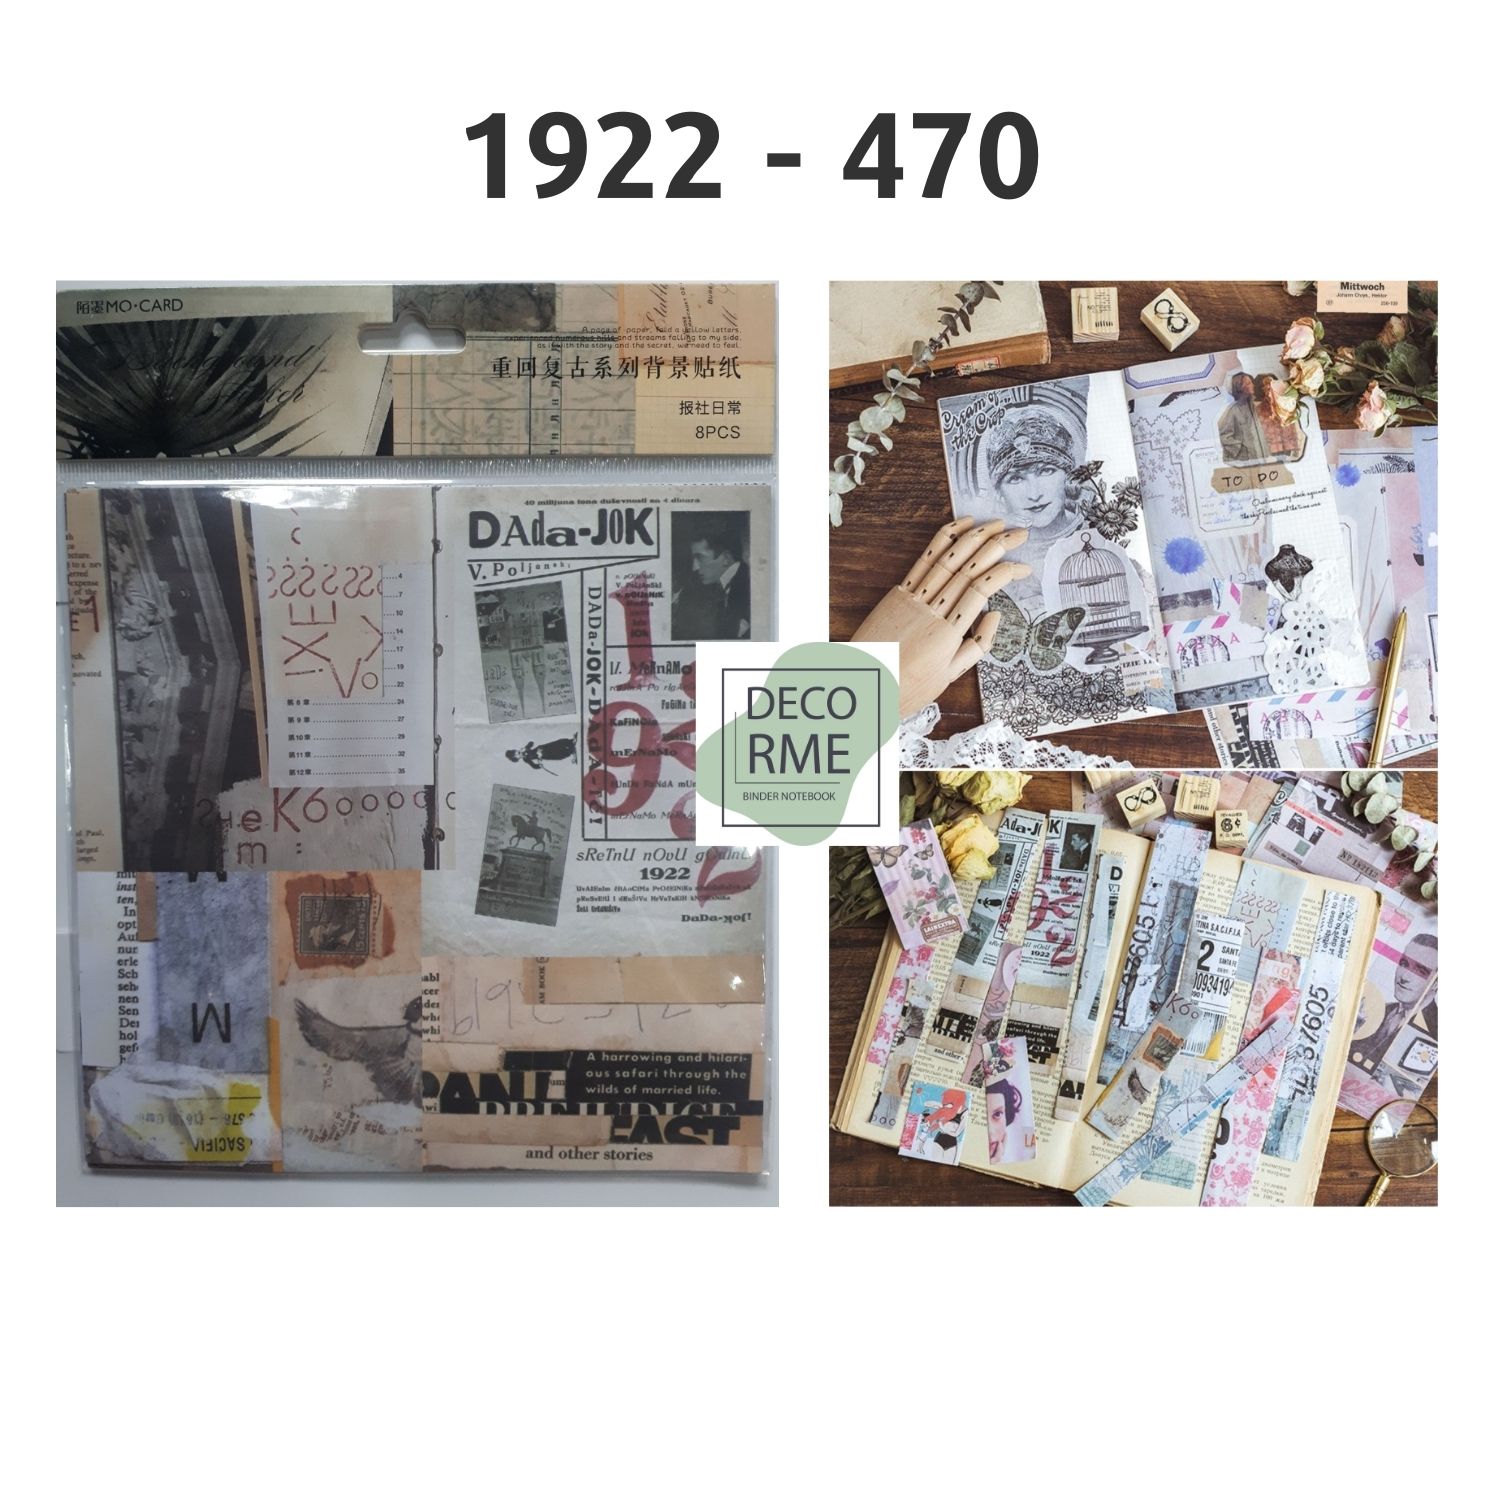 Decorme Set giấy báo vuông vintge, báo xé trang trí sổ, bullet journal, gói quà nhiều mẫu